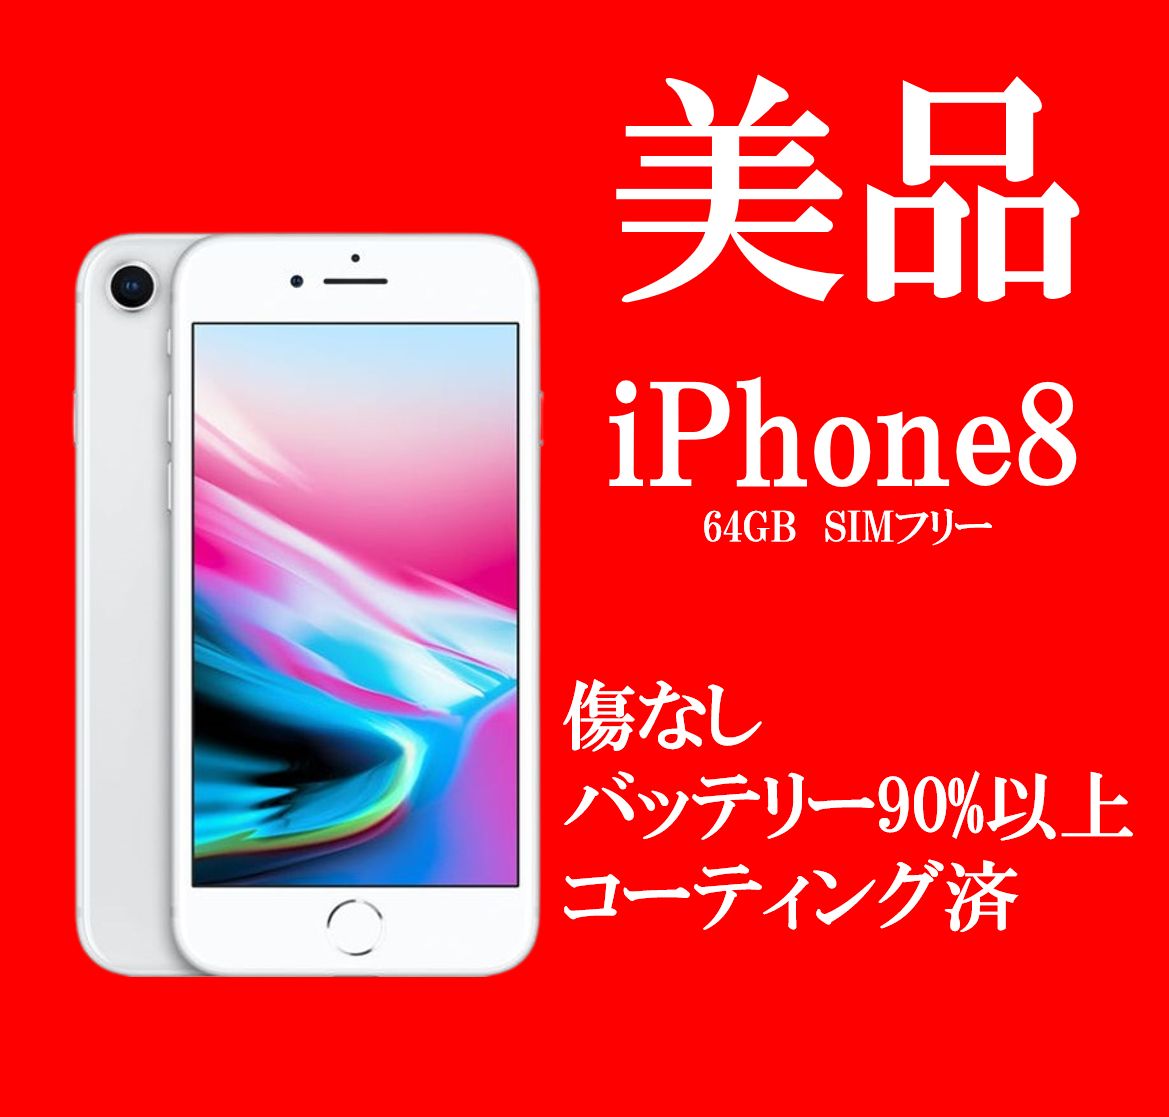 iPhone 8 Silver 64 GB SIMフリー 本体 90 - スマートフォン本体